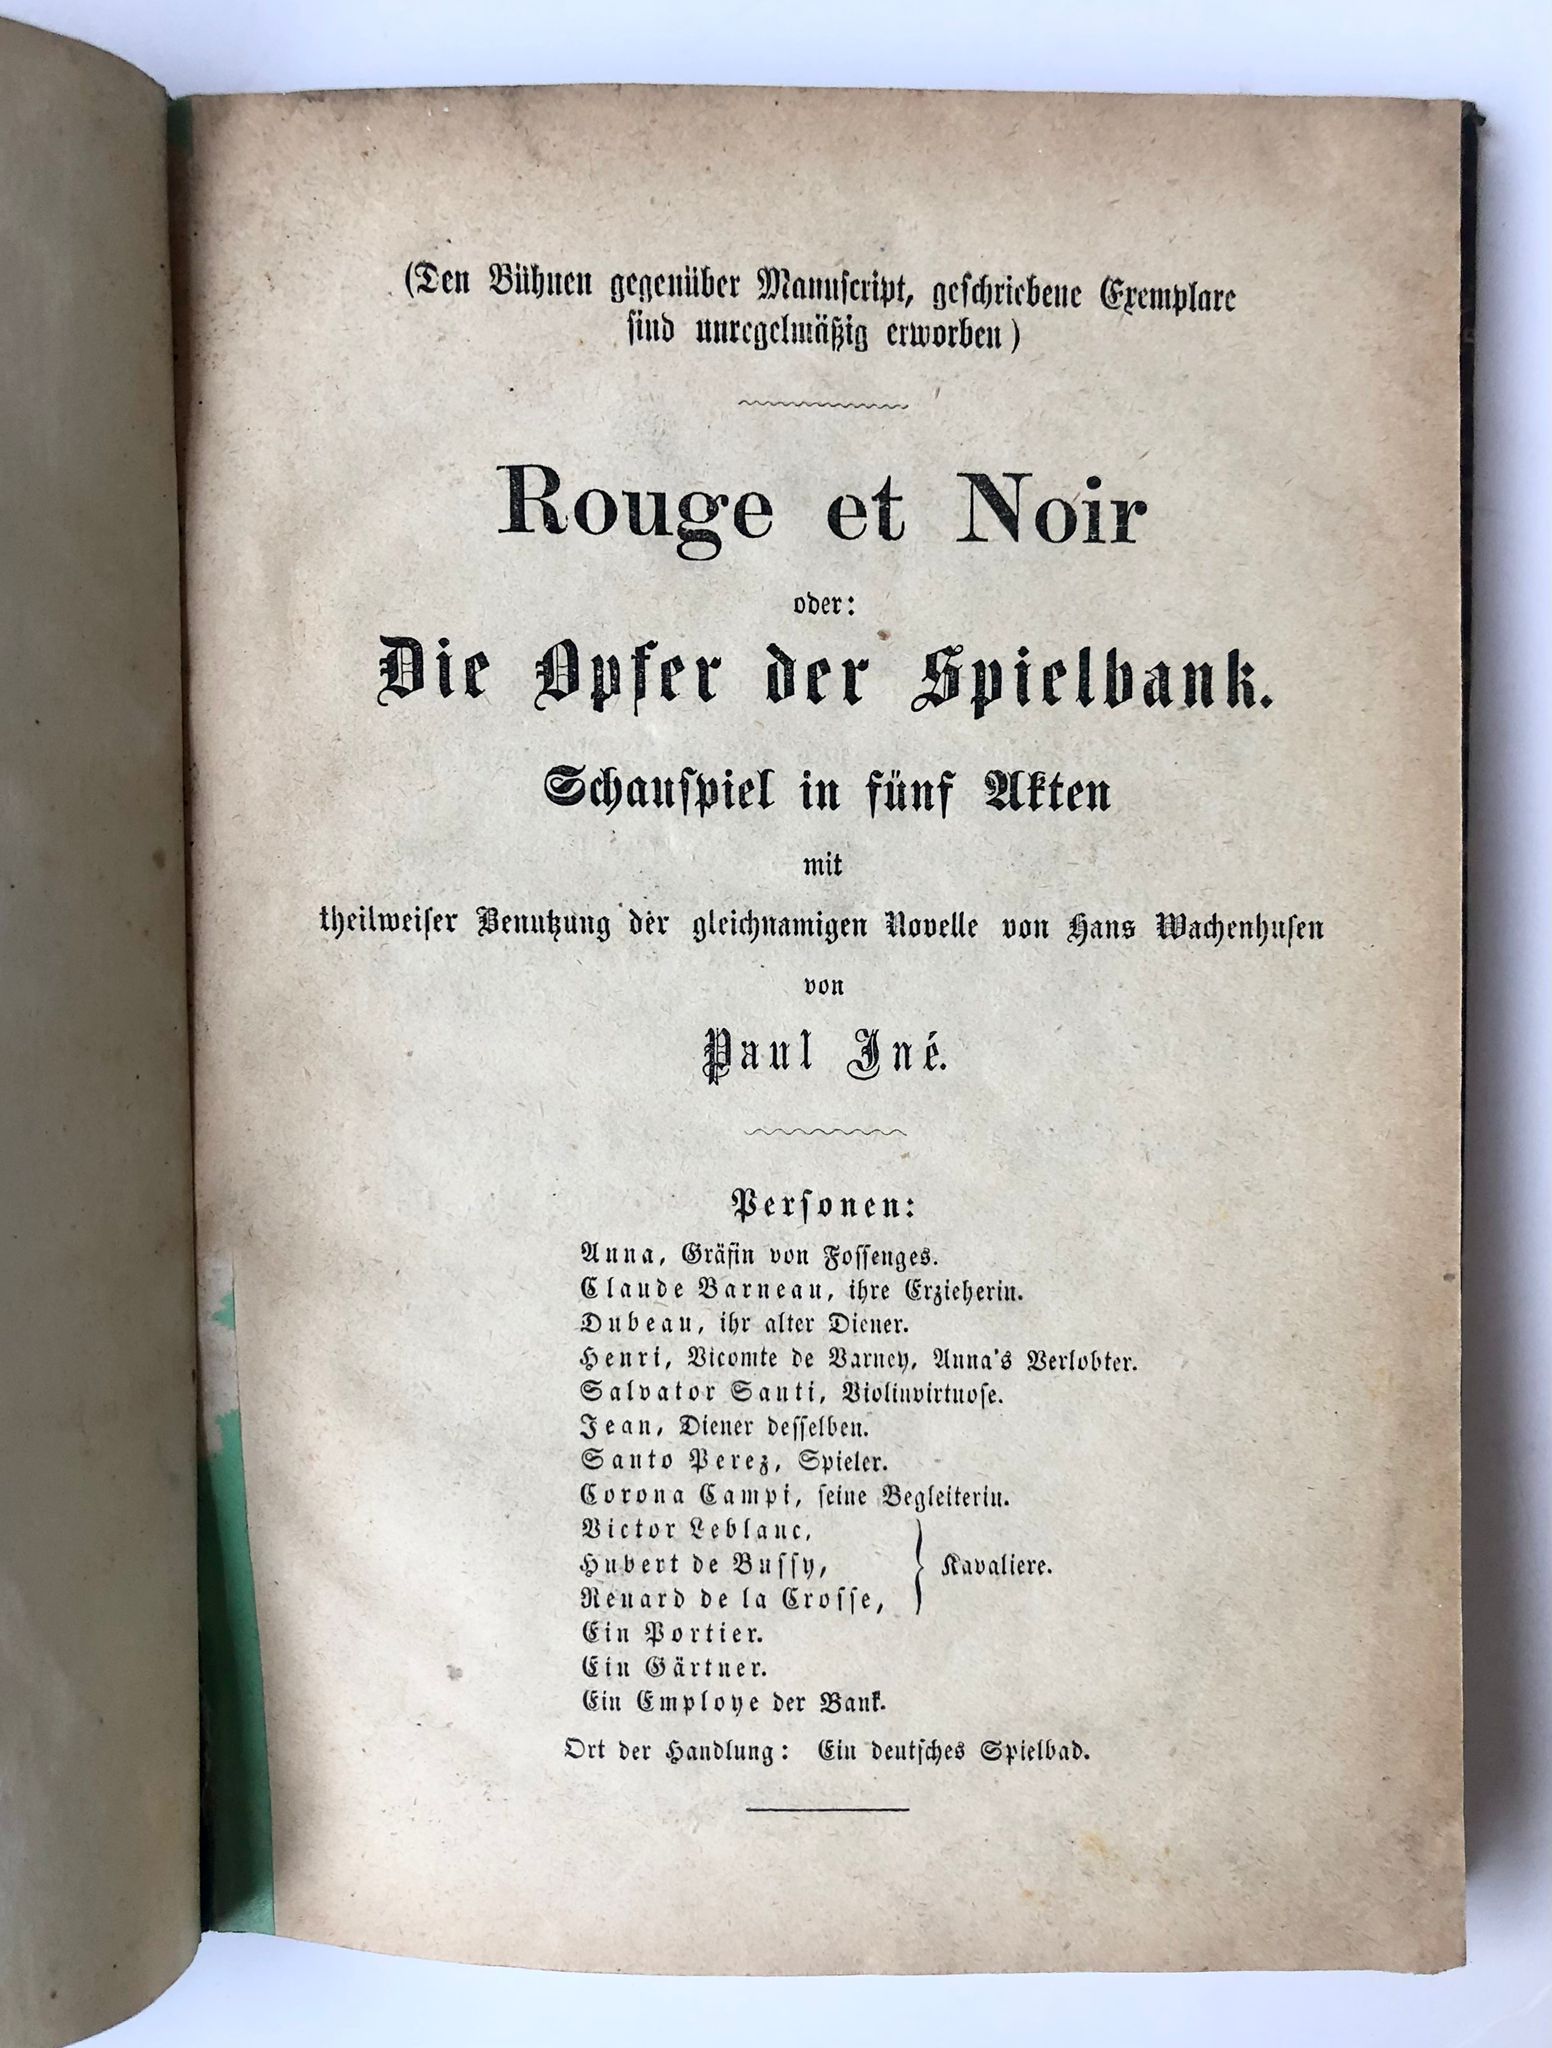 [German theatre play, ca 1900, gambling] Theatre play 'Rouge et noir, oder die Opfer der Spielbank' by Paul Ine, s.l., s.d [ca. 1900?], 44 pp., printed publication.